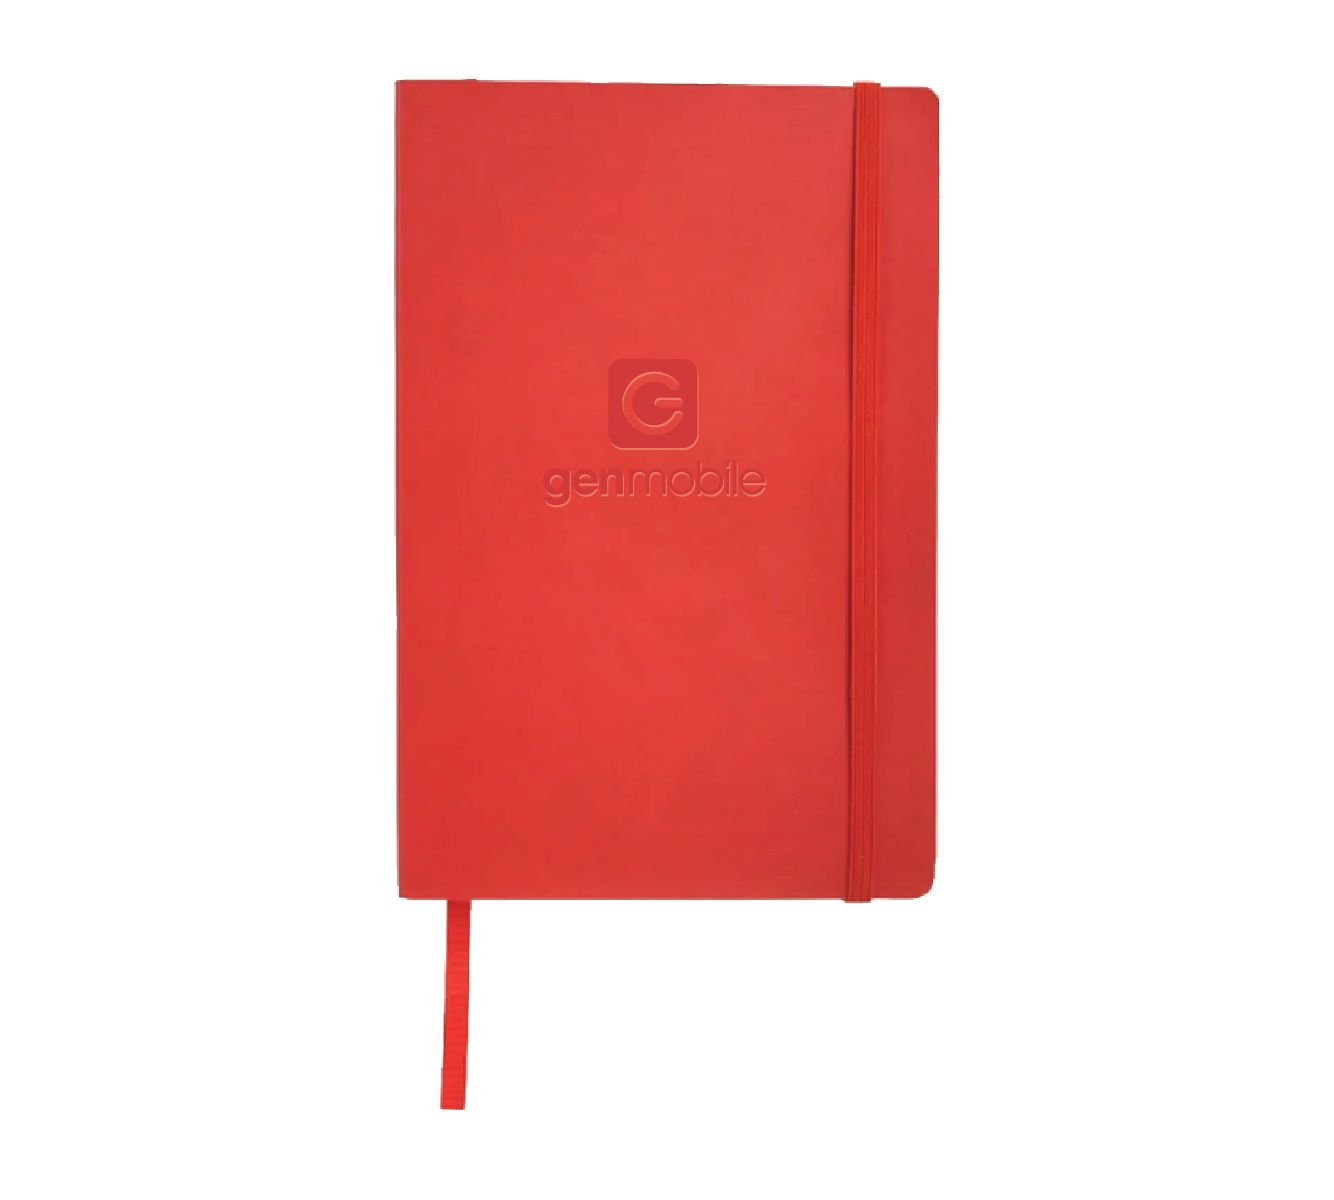 Pedova Soft Bound JournalBook with Gen Mobile Logo